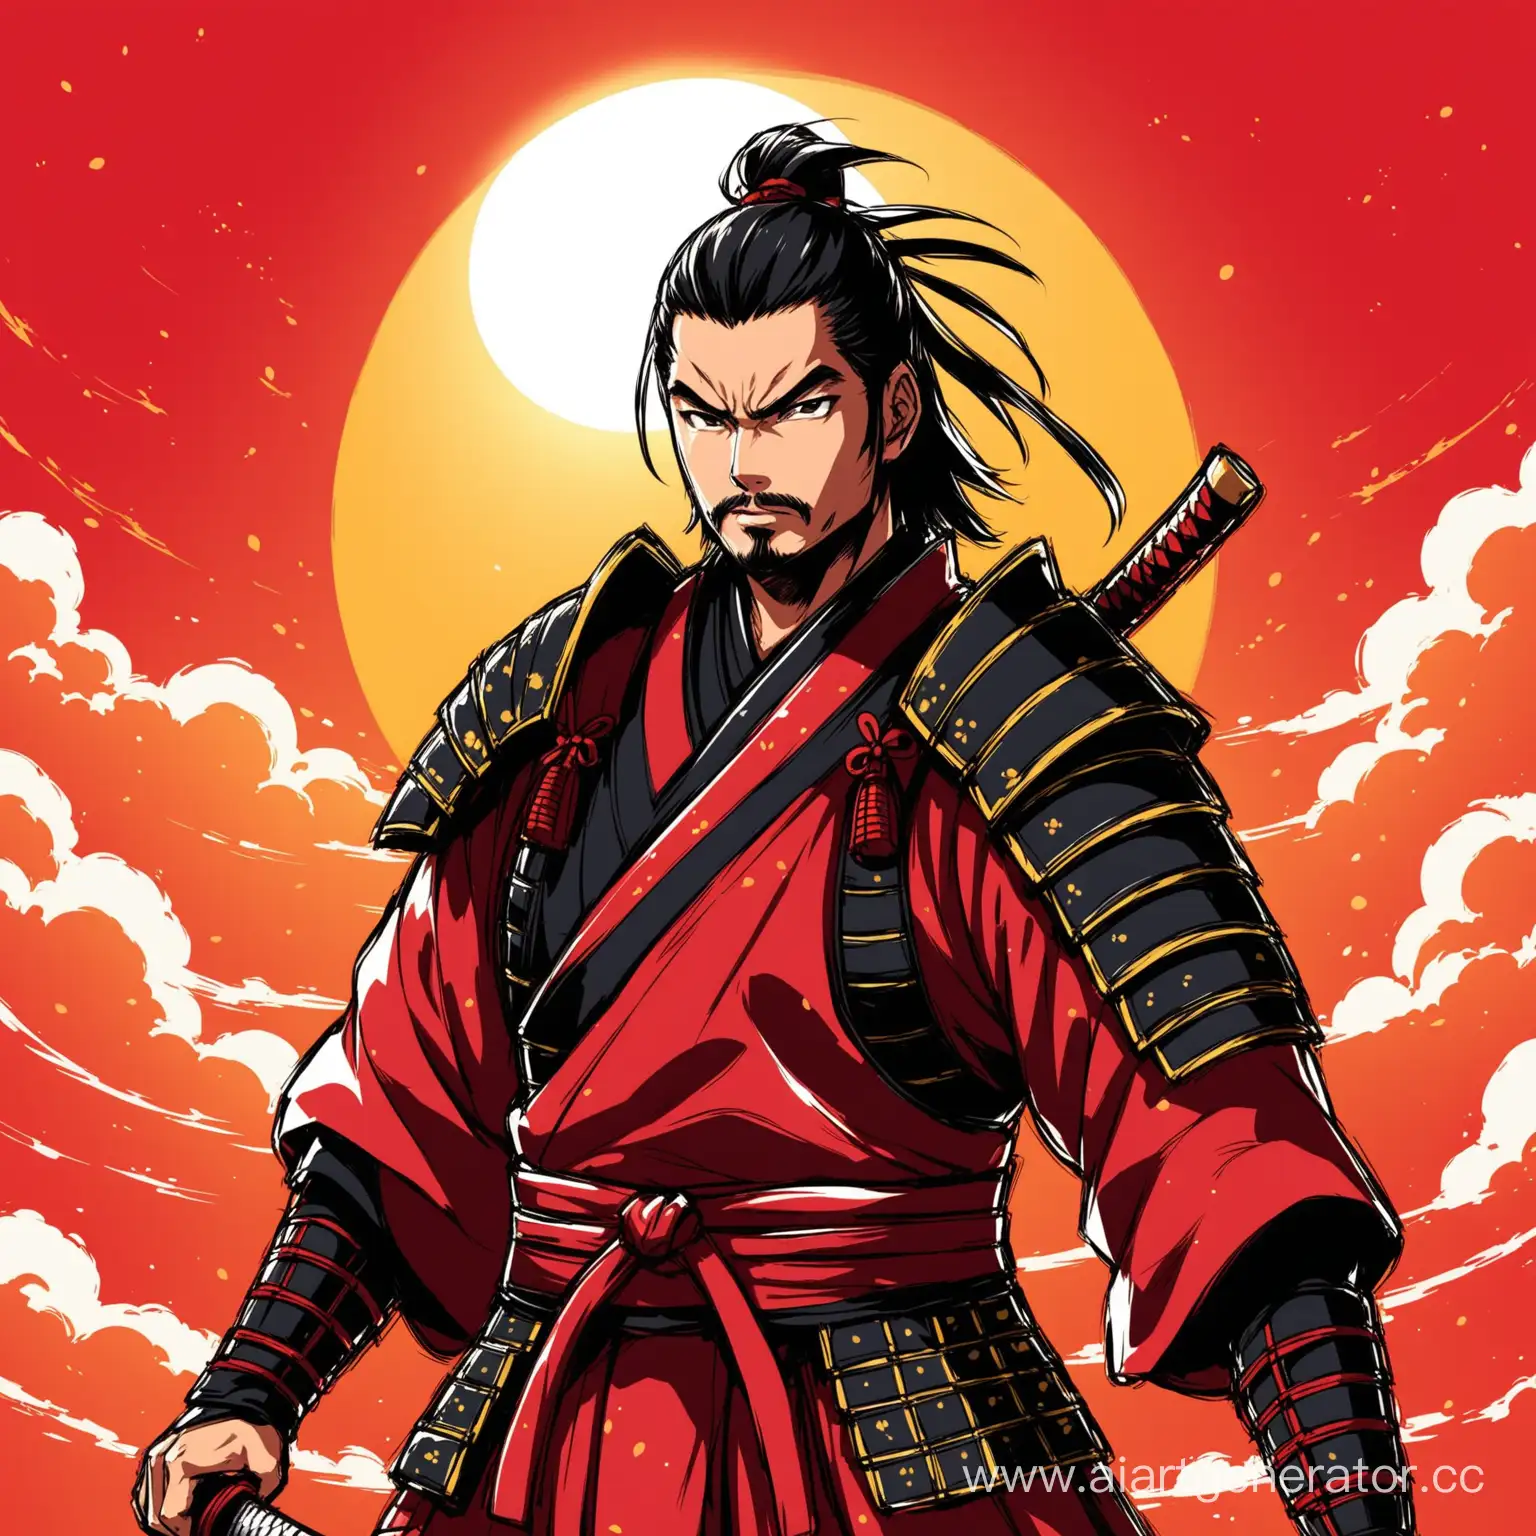 Anime-Samurai-Warrior-in-Radiant-Red-Sunset-NFT-Art